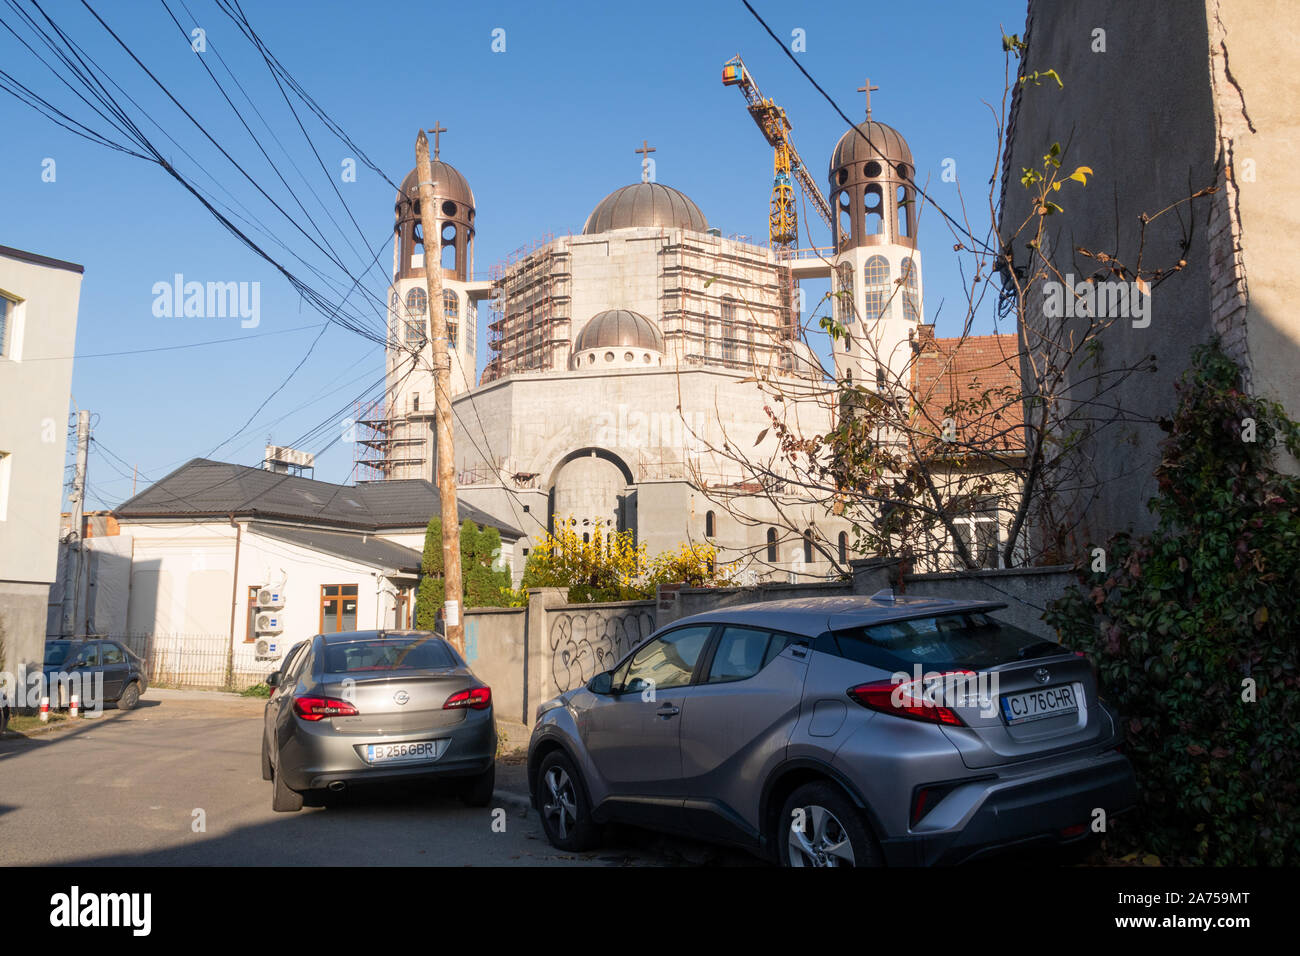 Cluj Napoca, Roumanie - 24 Oct, 2019 : une église orthodoxe traditionnelle en construction à Cluj Napoca, une des plus grandes villes de Transylvanie, Roumanie. Je Banque D'Images